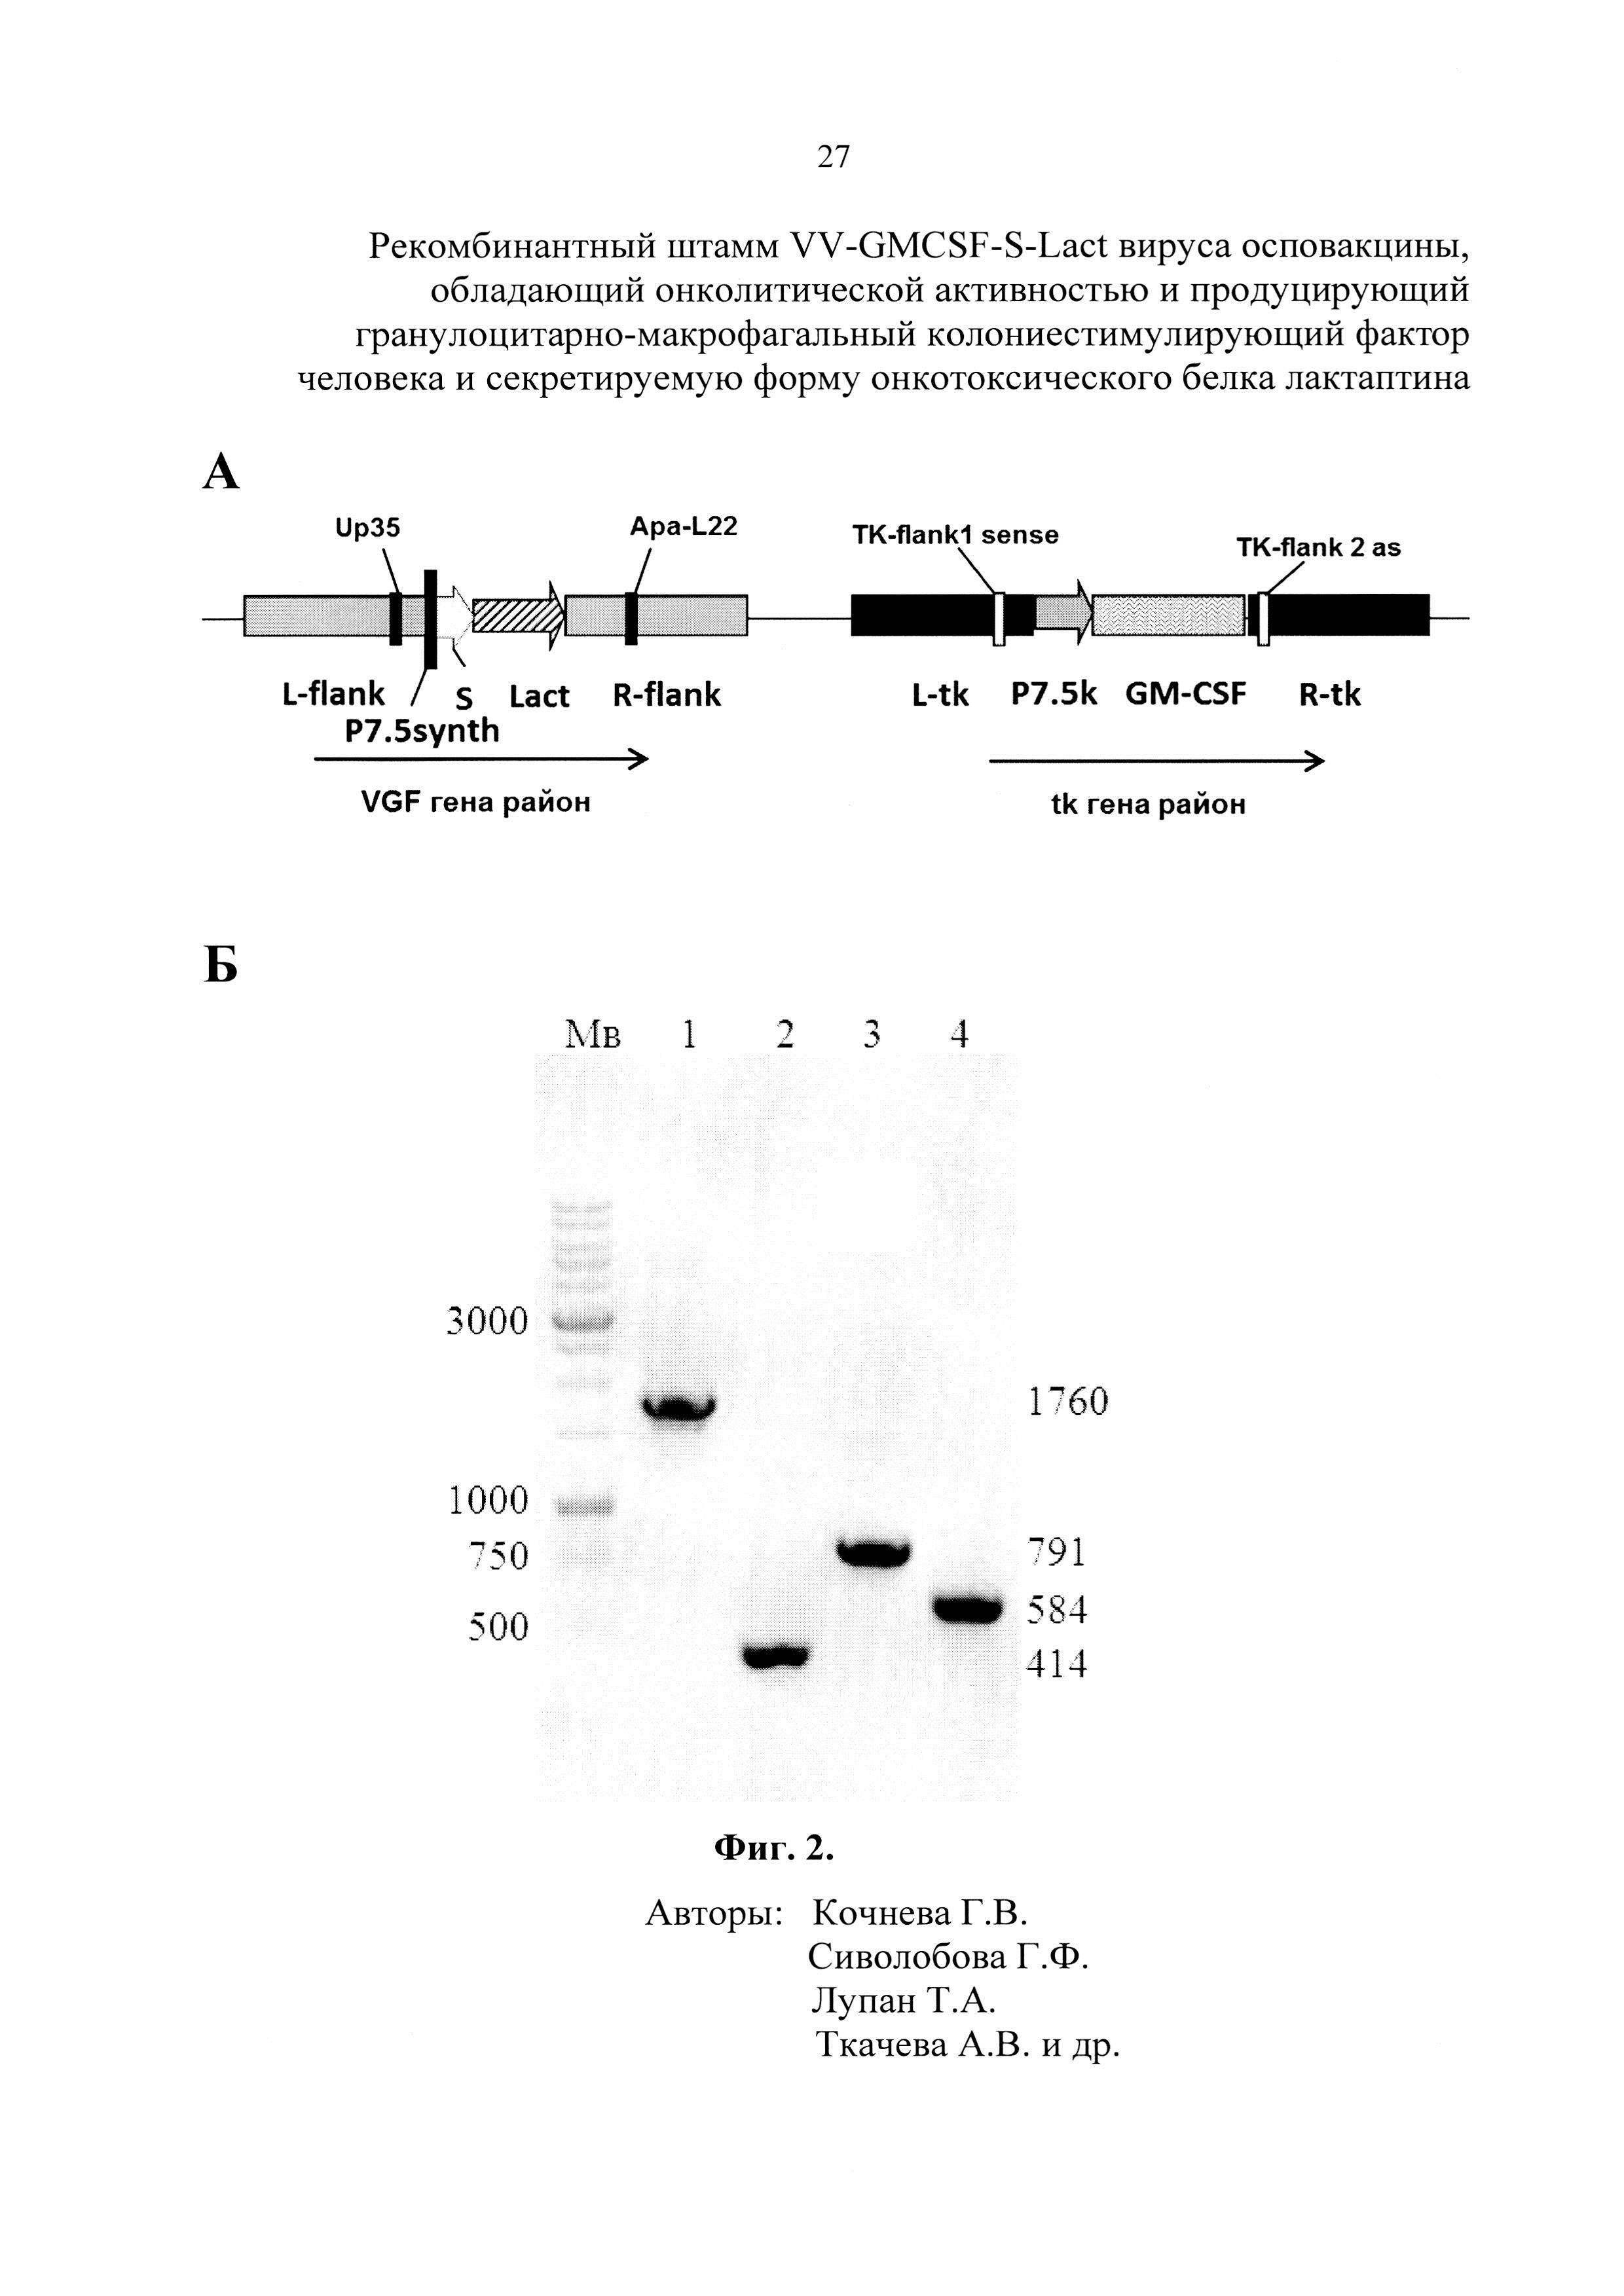 Рекомбинантный штамм VV-GMCSF-S-Lact вируса осповакцины, обладающий онколитической активностью и продуцирующий гранулоцитарно-макрофагальный колониестимулирующий фактор человека и секретируемую форму онкотоксического белка лактаптина